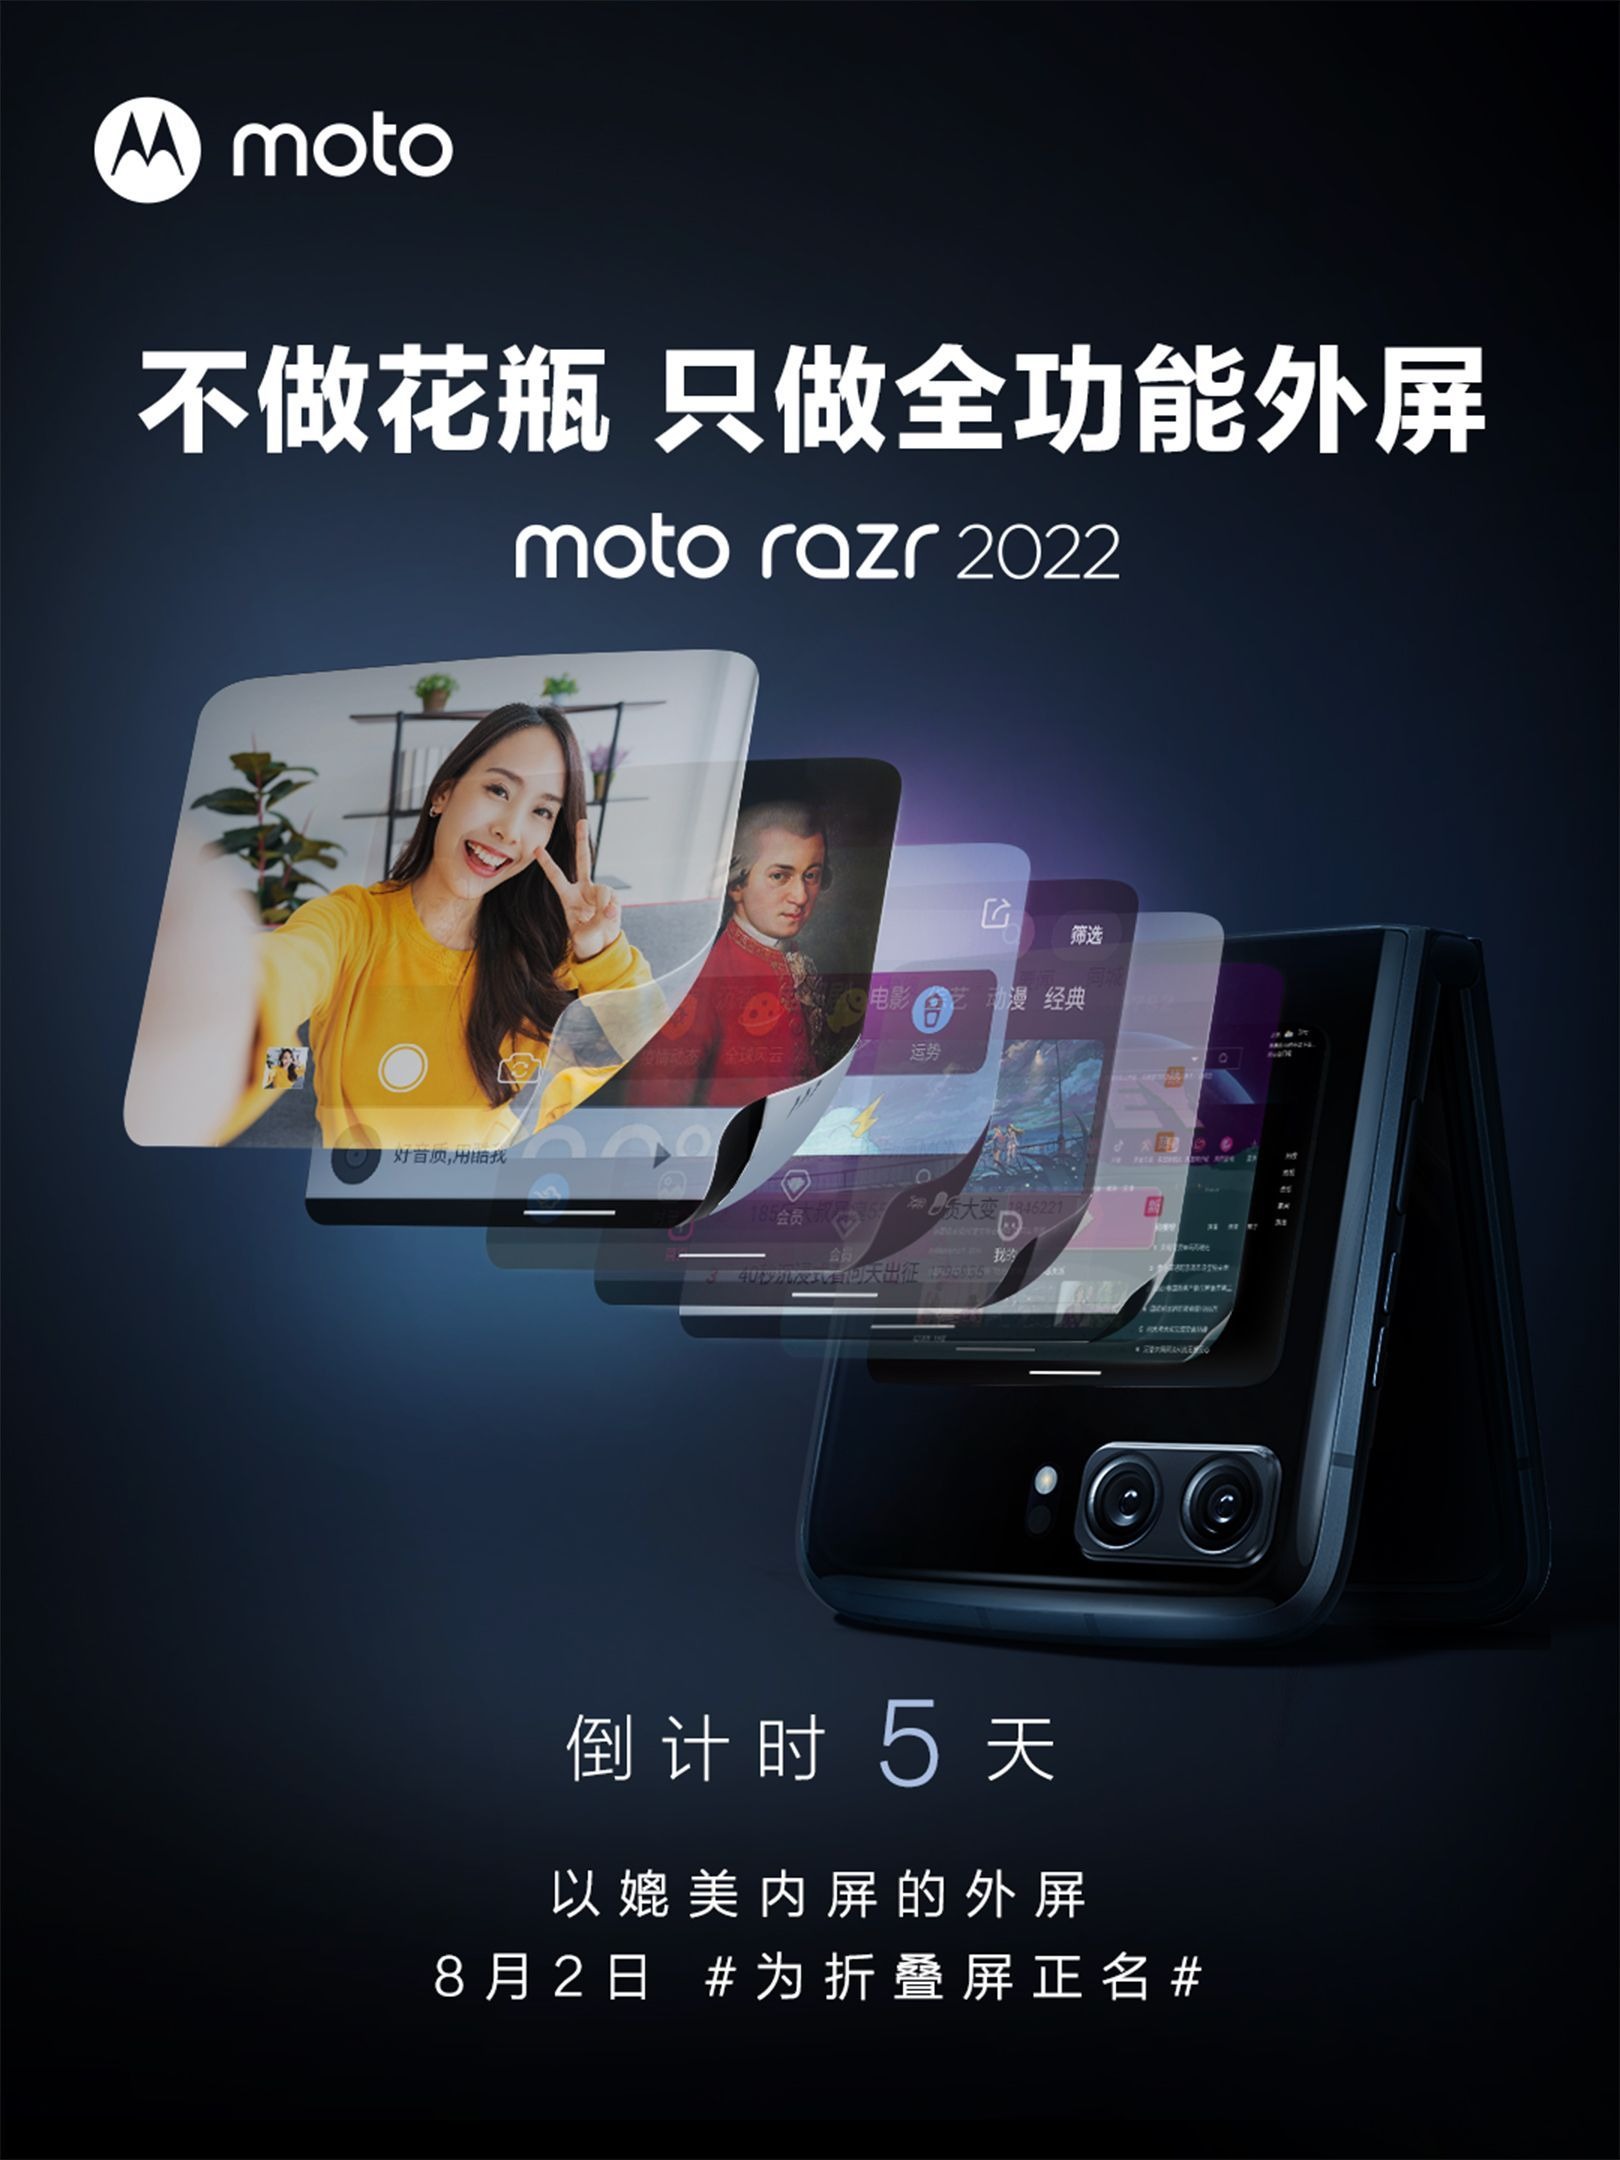 Motorola moto razr 2022